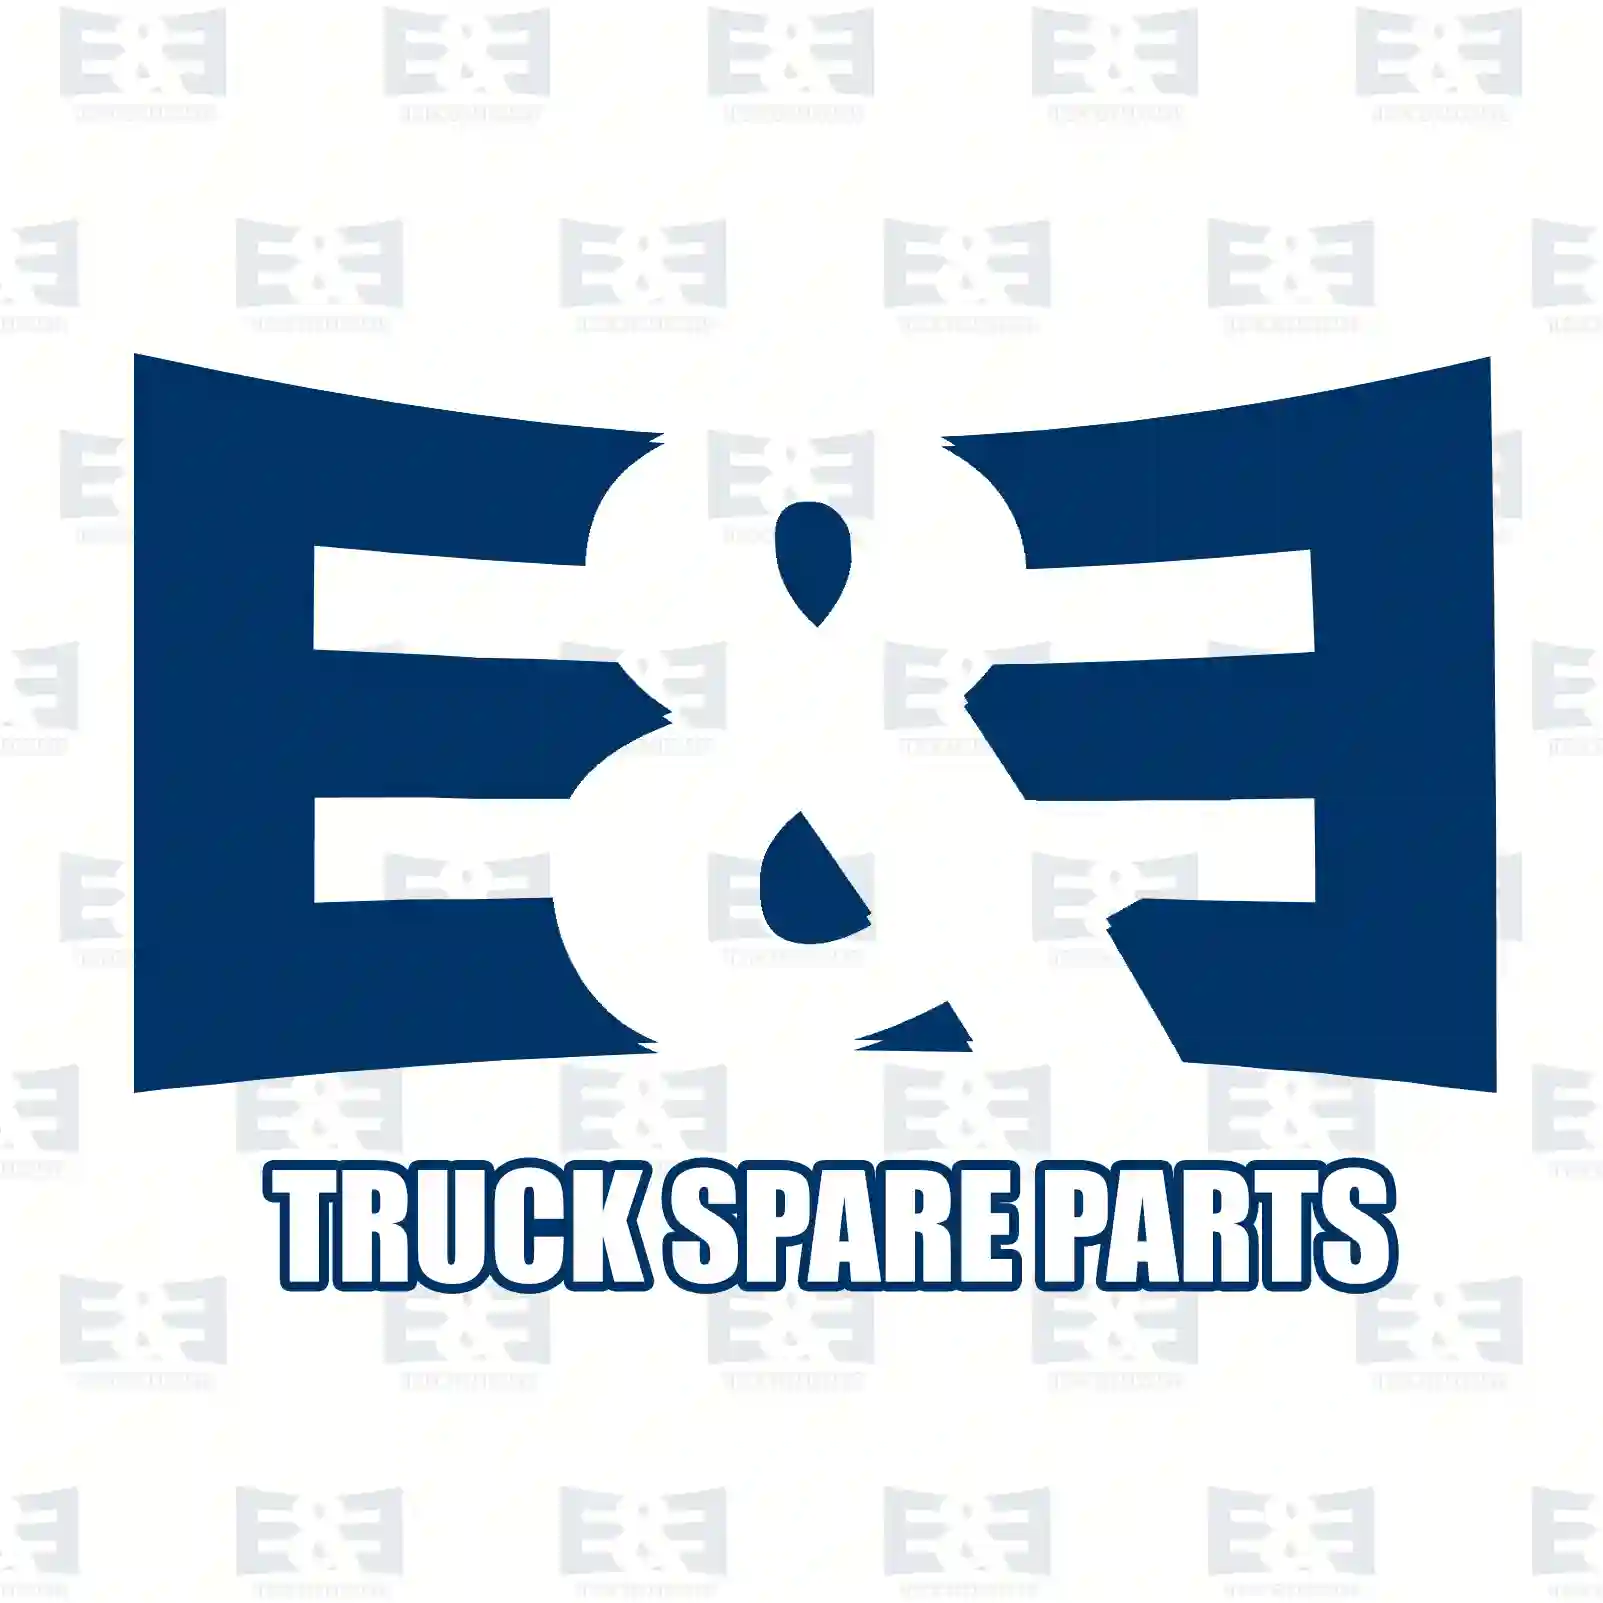 Nut, 2E2285214, 000934016013, 308673016001, 5003032236 ||  2E2285214 E&E Truck Spare Parts | Truck Spare Parts, Auotomotive Spare Parts Nut, 2E2285214, 000934016013, 308673016001, 5003032236 ||  2E2285214 E&E Truck Spare Parts | Truck Spare Parts, Auotomotive Spare Parts